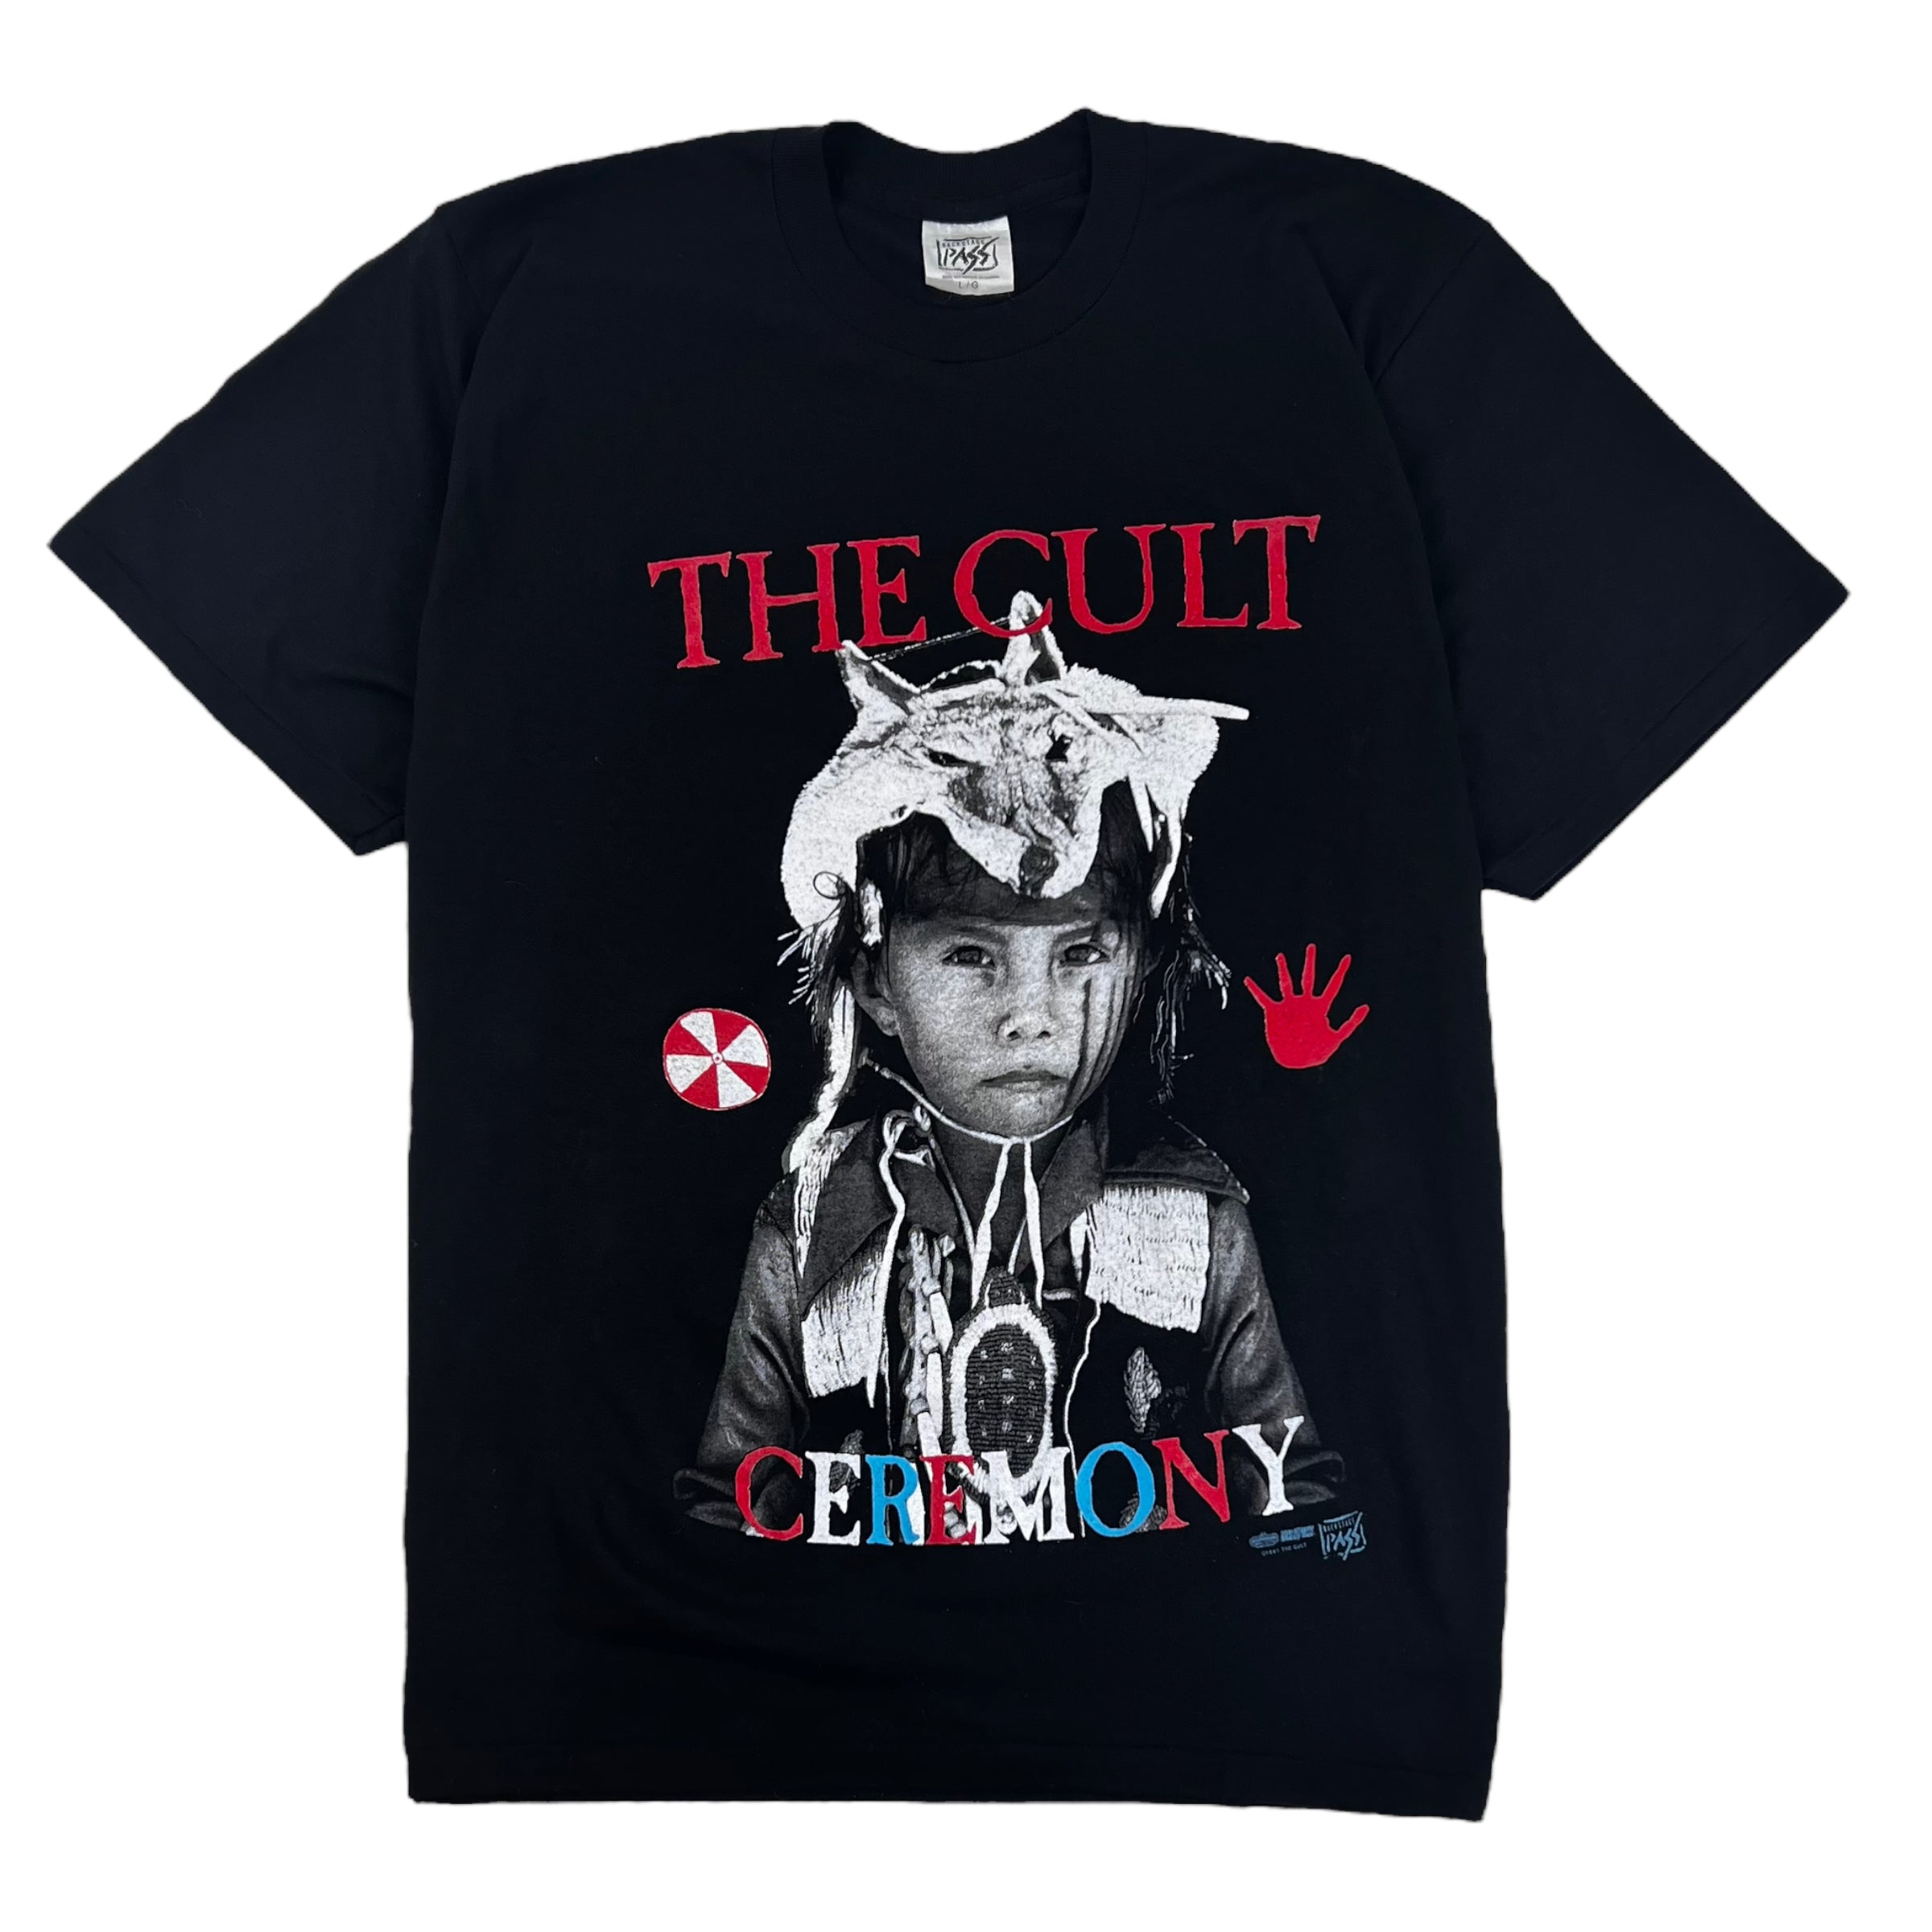 1991 The Cult Ceremony Tour T-Shirt - Black